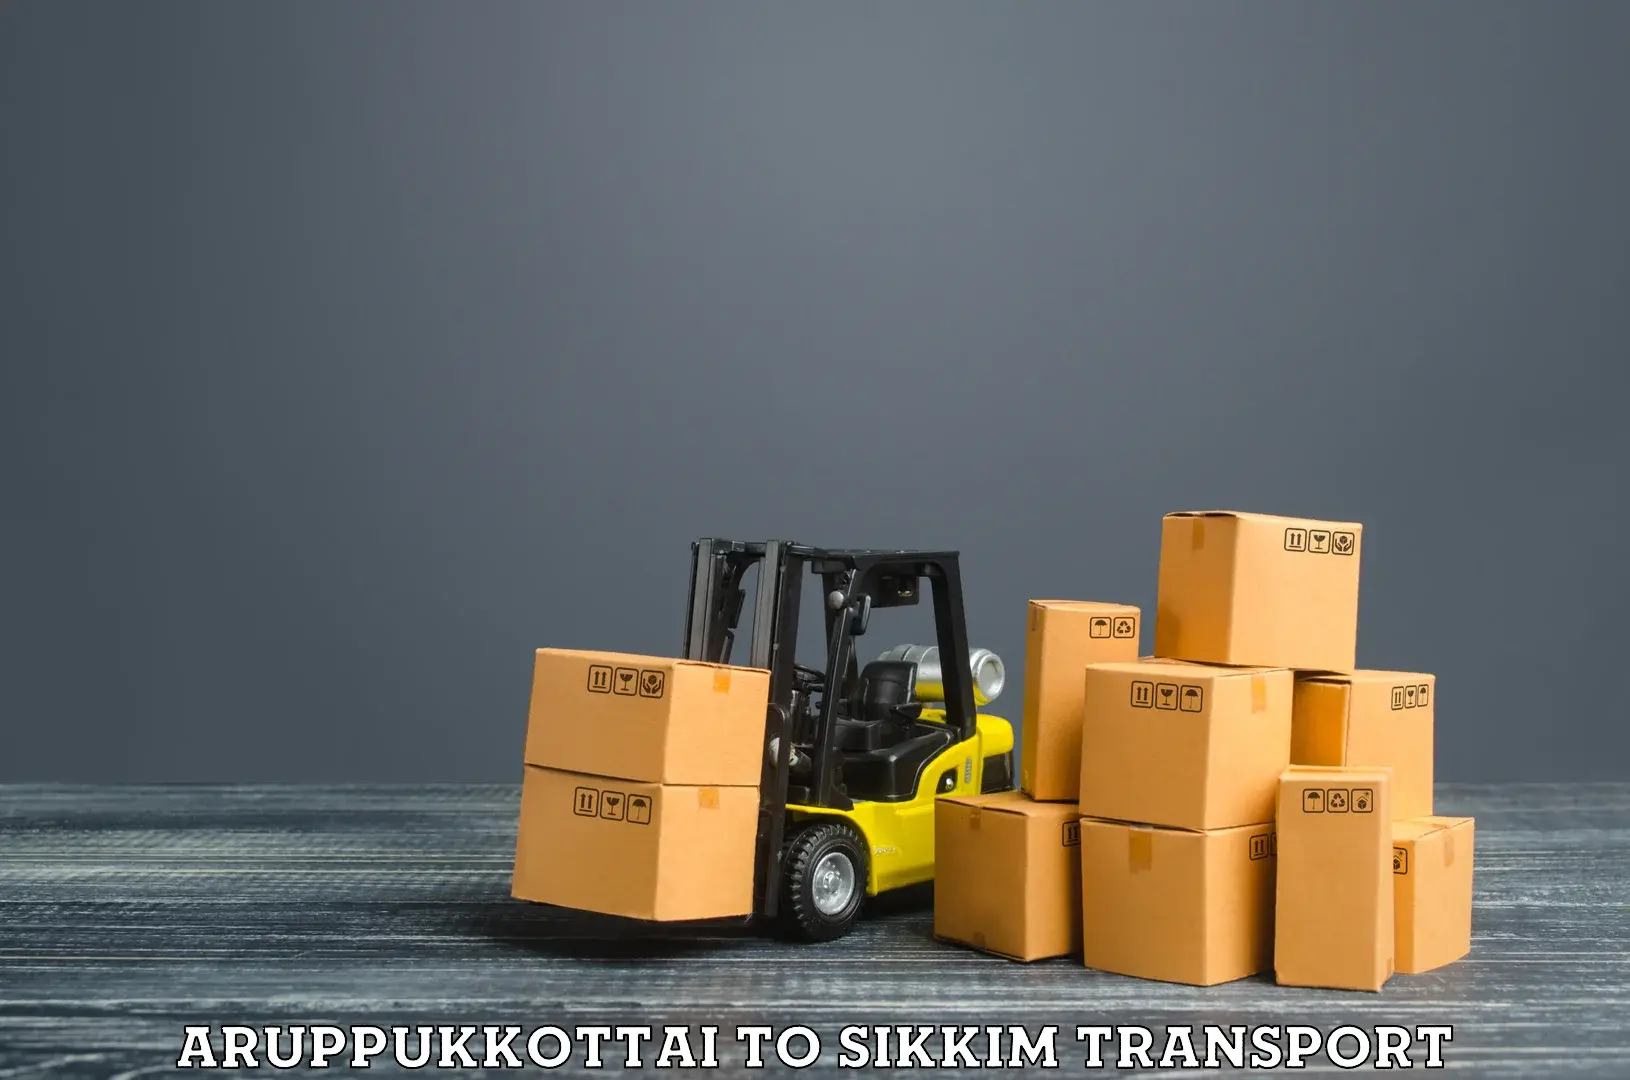 Cargo transportation services Aruppukkottai to North Sikkim